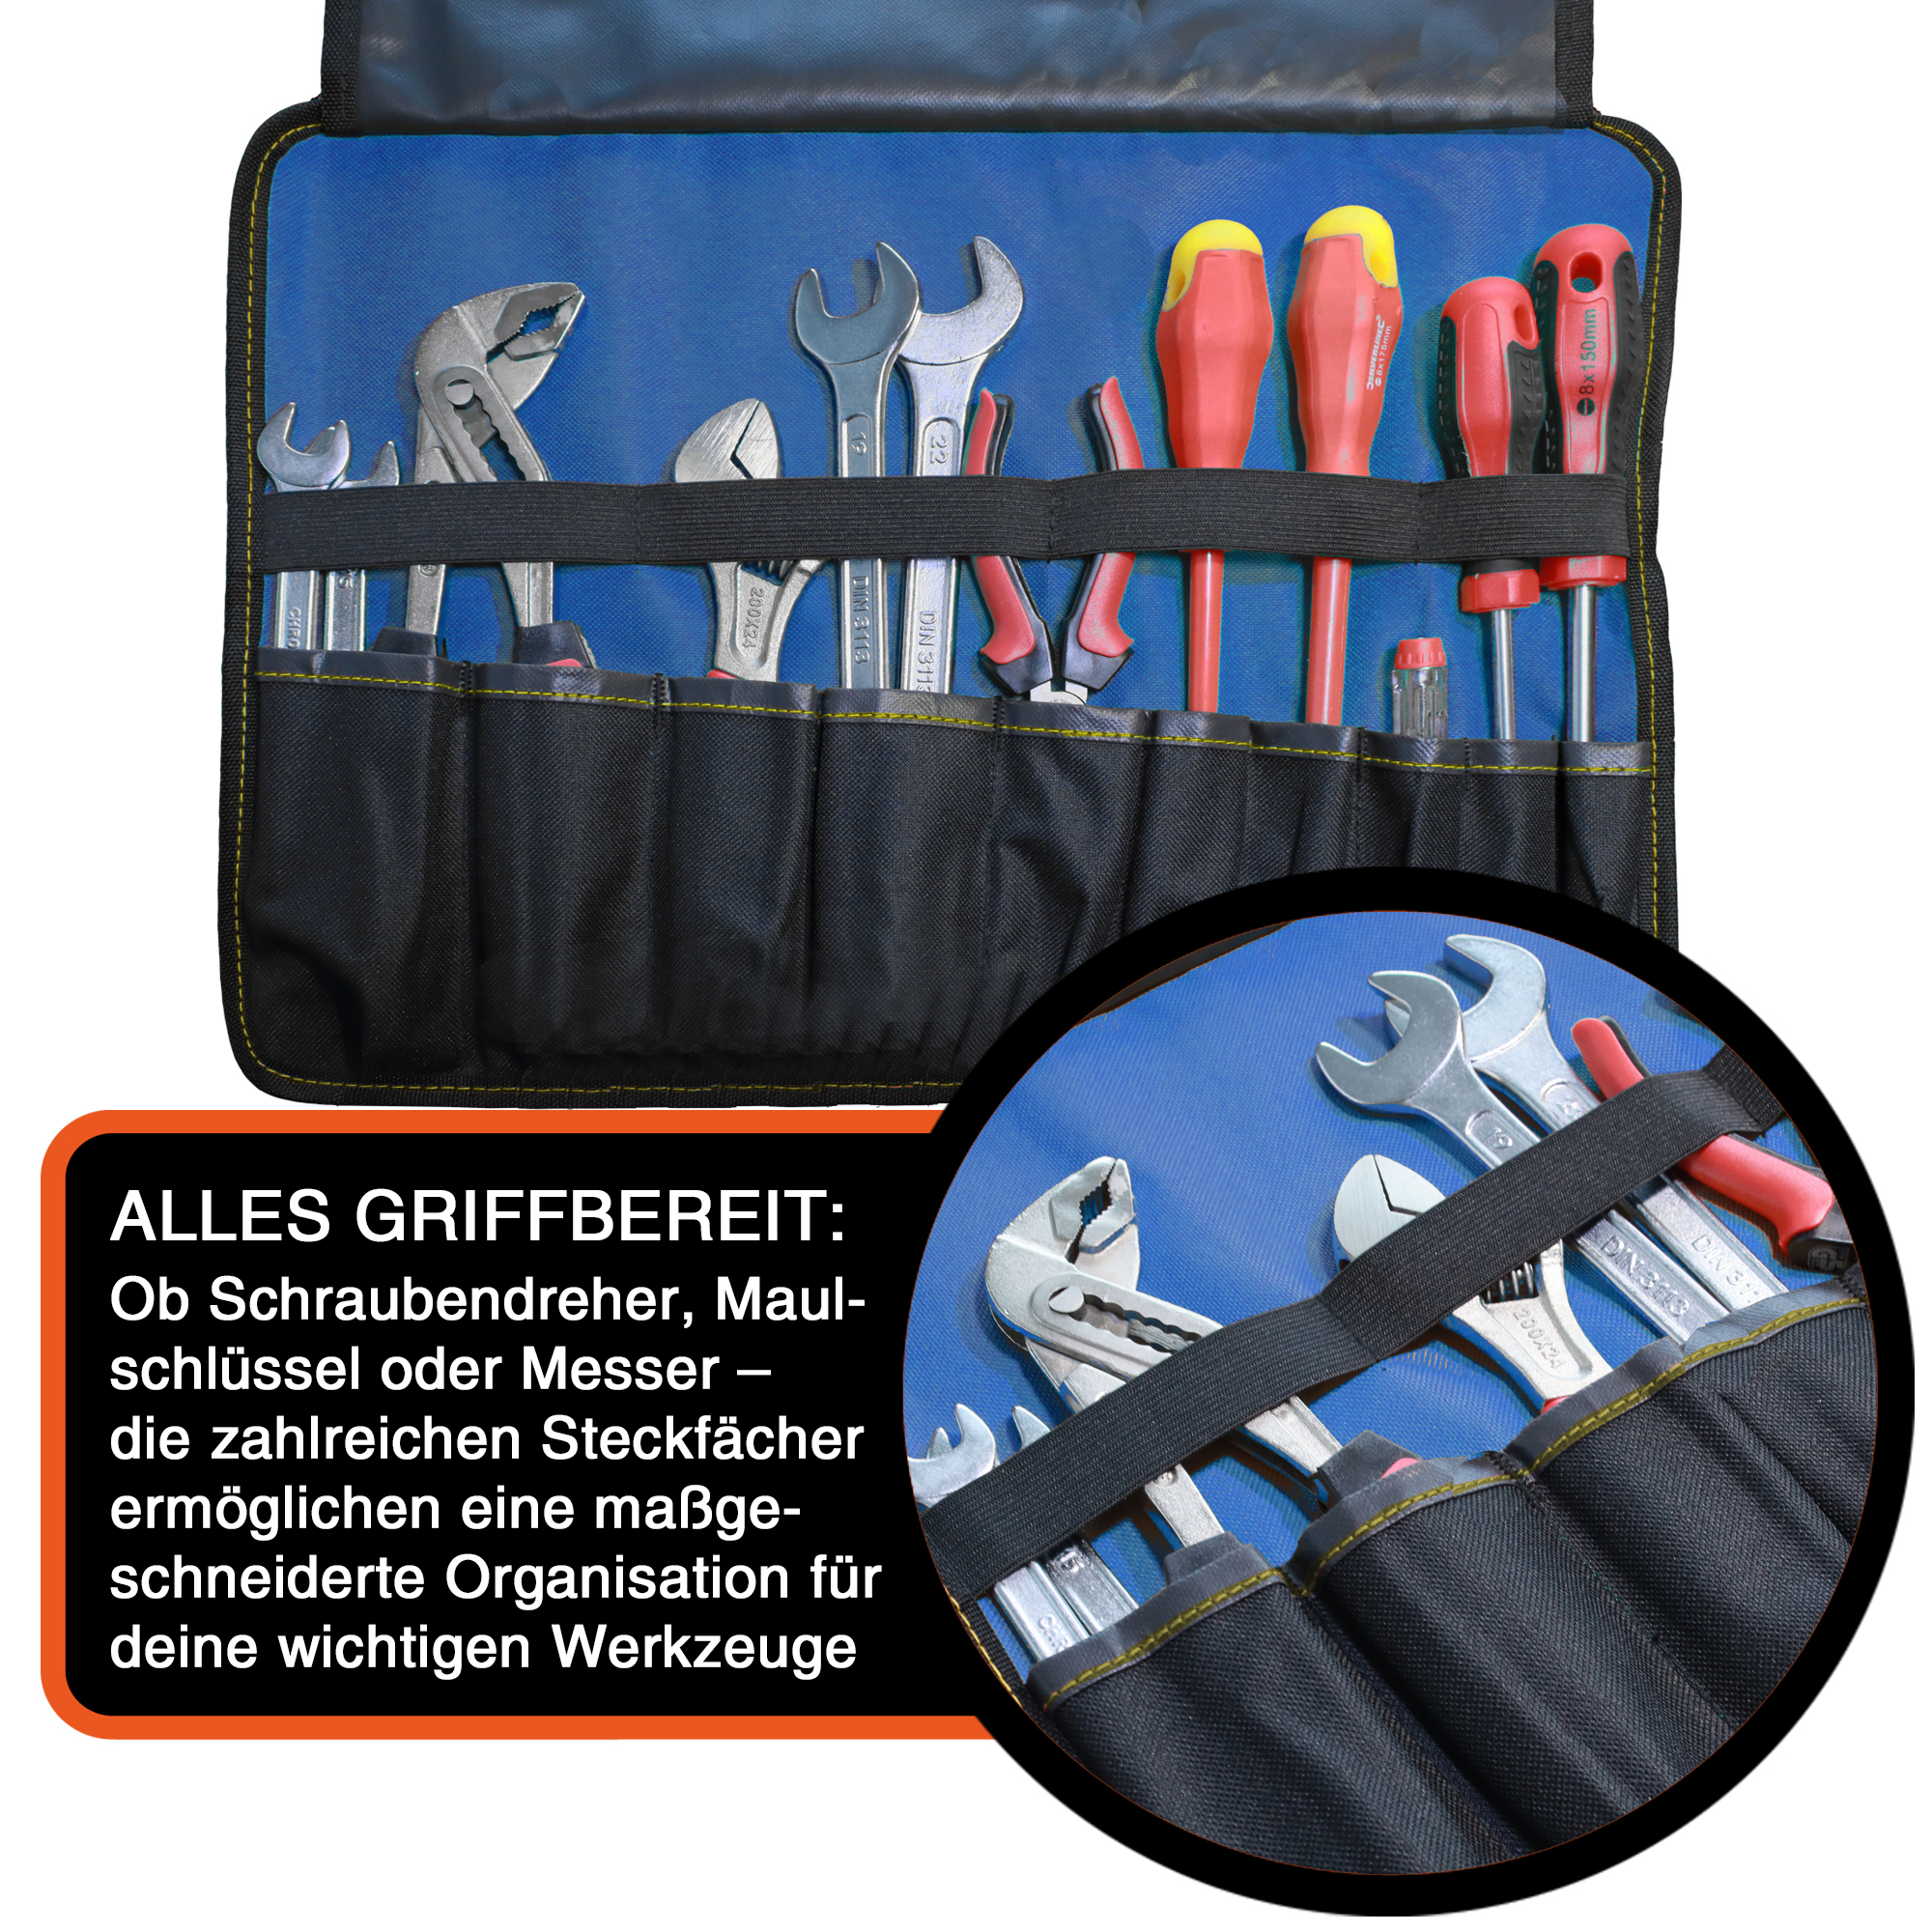 "VarioRoll L" Werkzeug Rolltasche 45x32cm, 10 Steckfächer und 4 Halteschlaufen, Blau-Schwarz